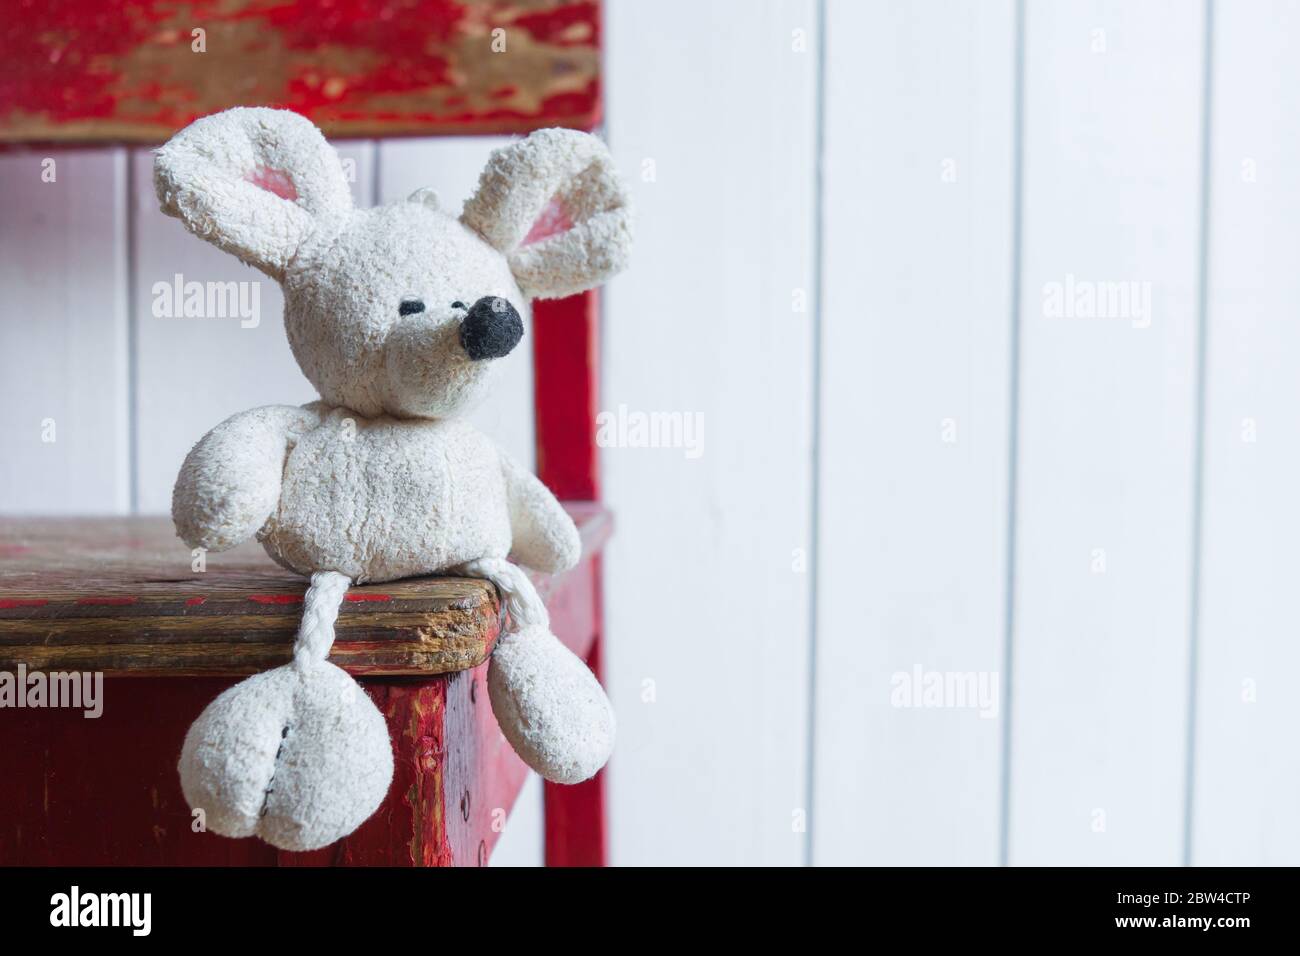 Un vecchio mouse bianco si siede su una vecchia sedia rossa sullo sfondo di una parete bianca. Concetto di solitudine nell'infanzia e nell'età avanzata. Foto Stock